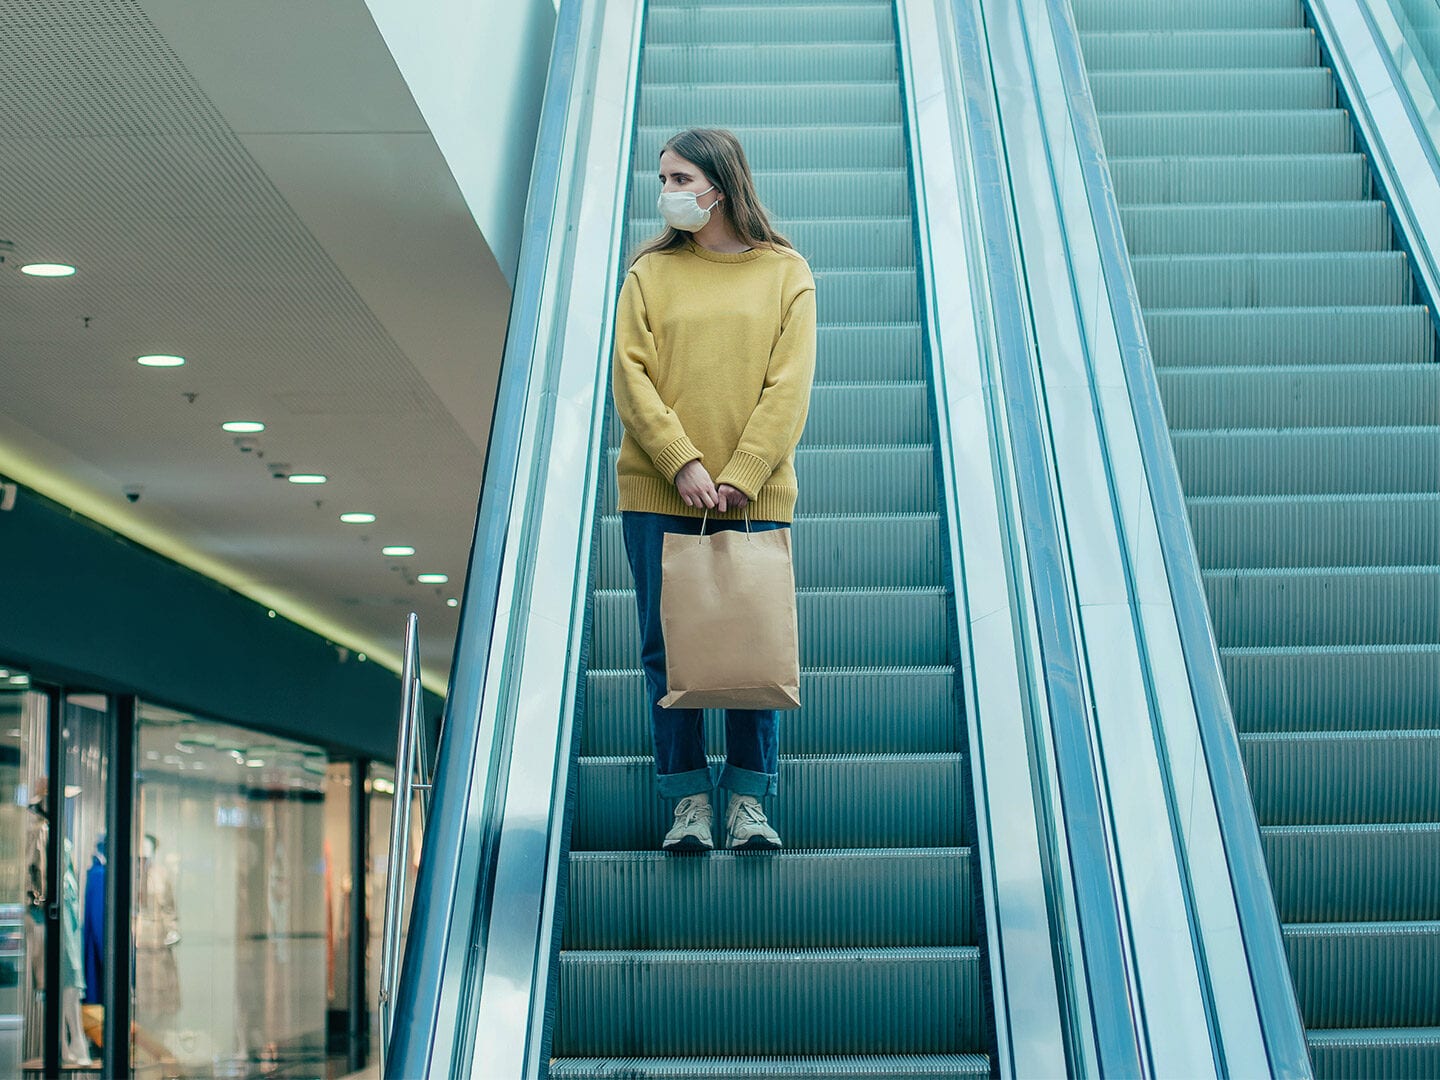 EIne Frau steht alleine auf einer Rolltreppe mit einer Atem-Schutz-Maske im Gesicht